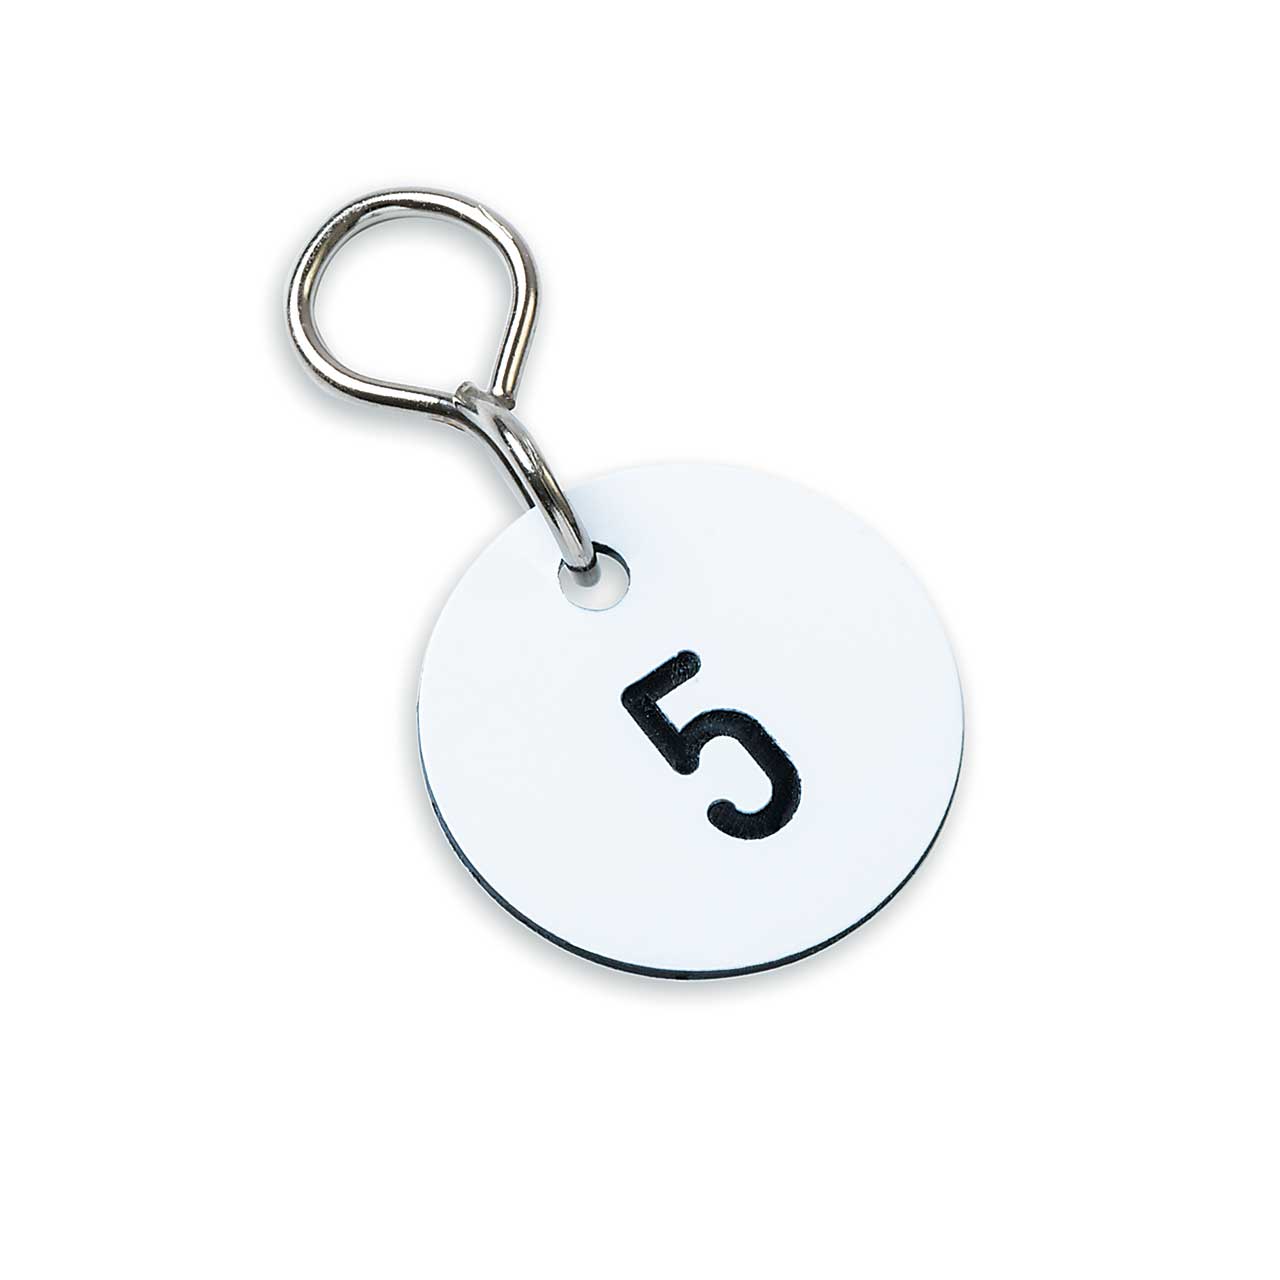 ID-Anhänger Schlüsselanhänger Nummernschilder aus Kunststoff ohne Loch nummeriert graviert 1–50, Schwarz 